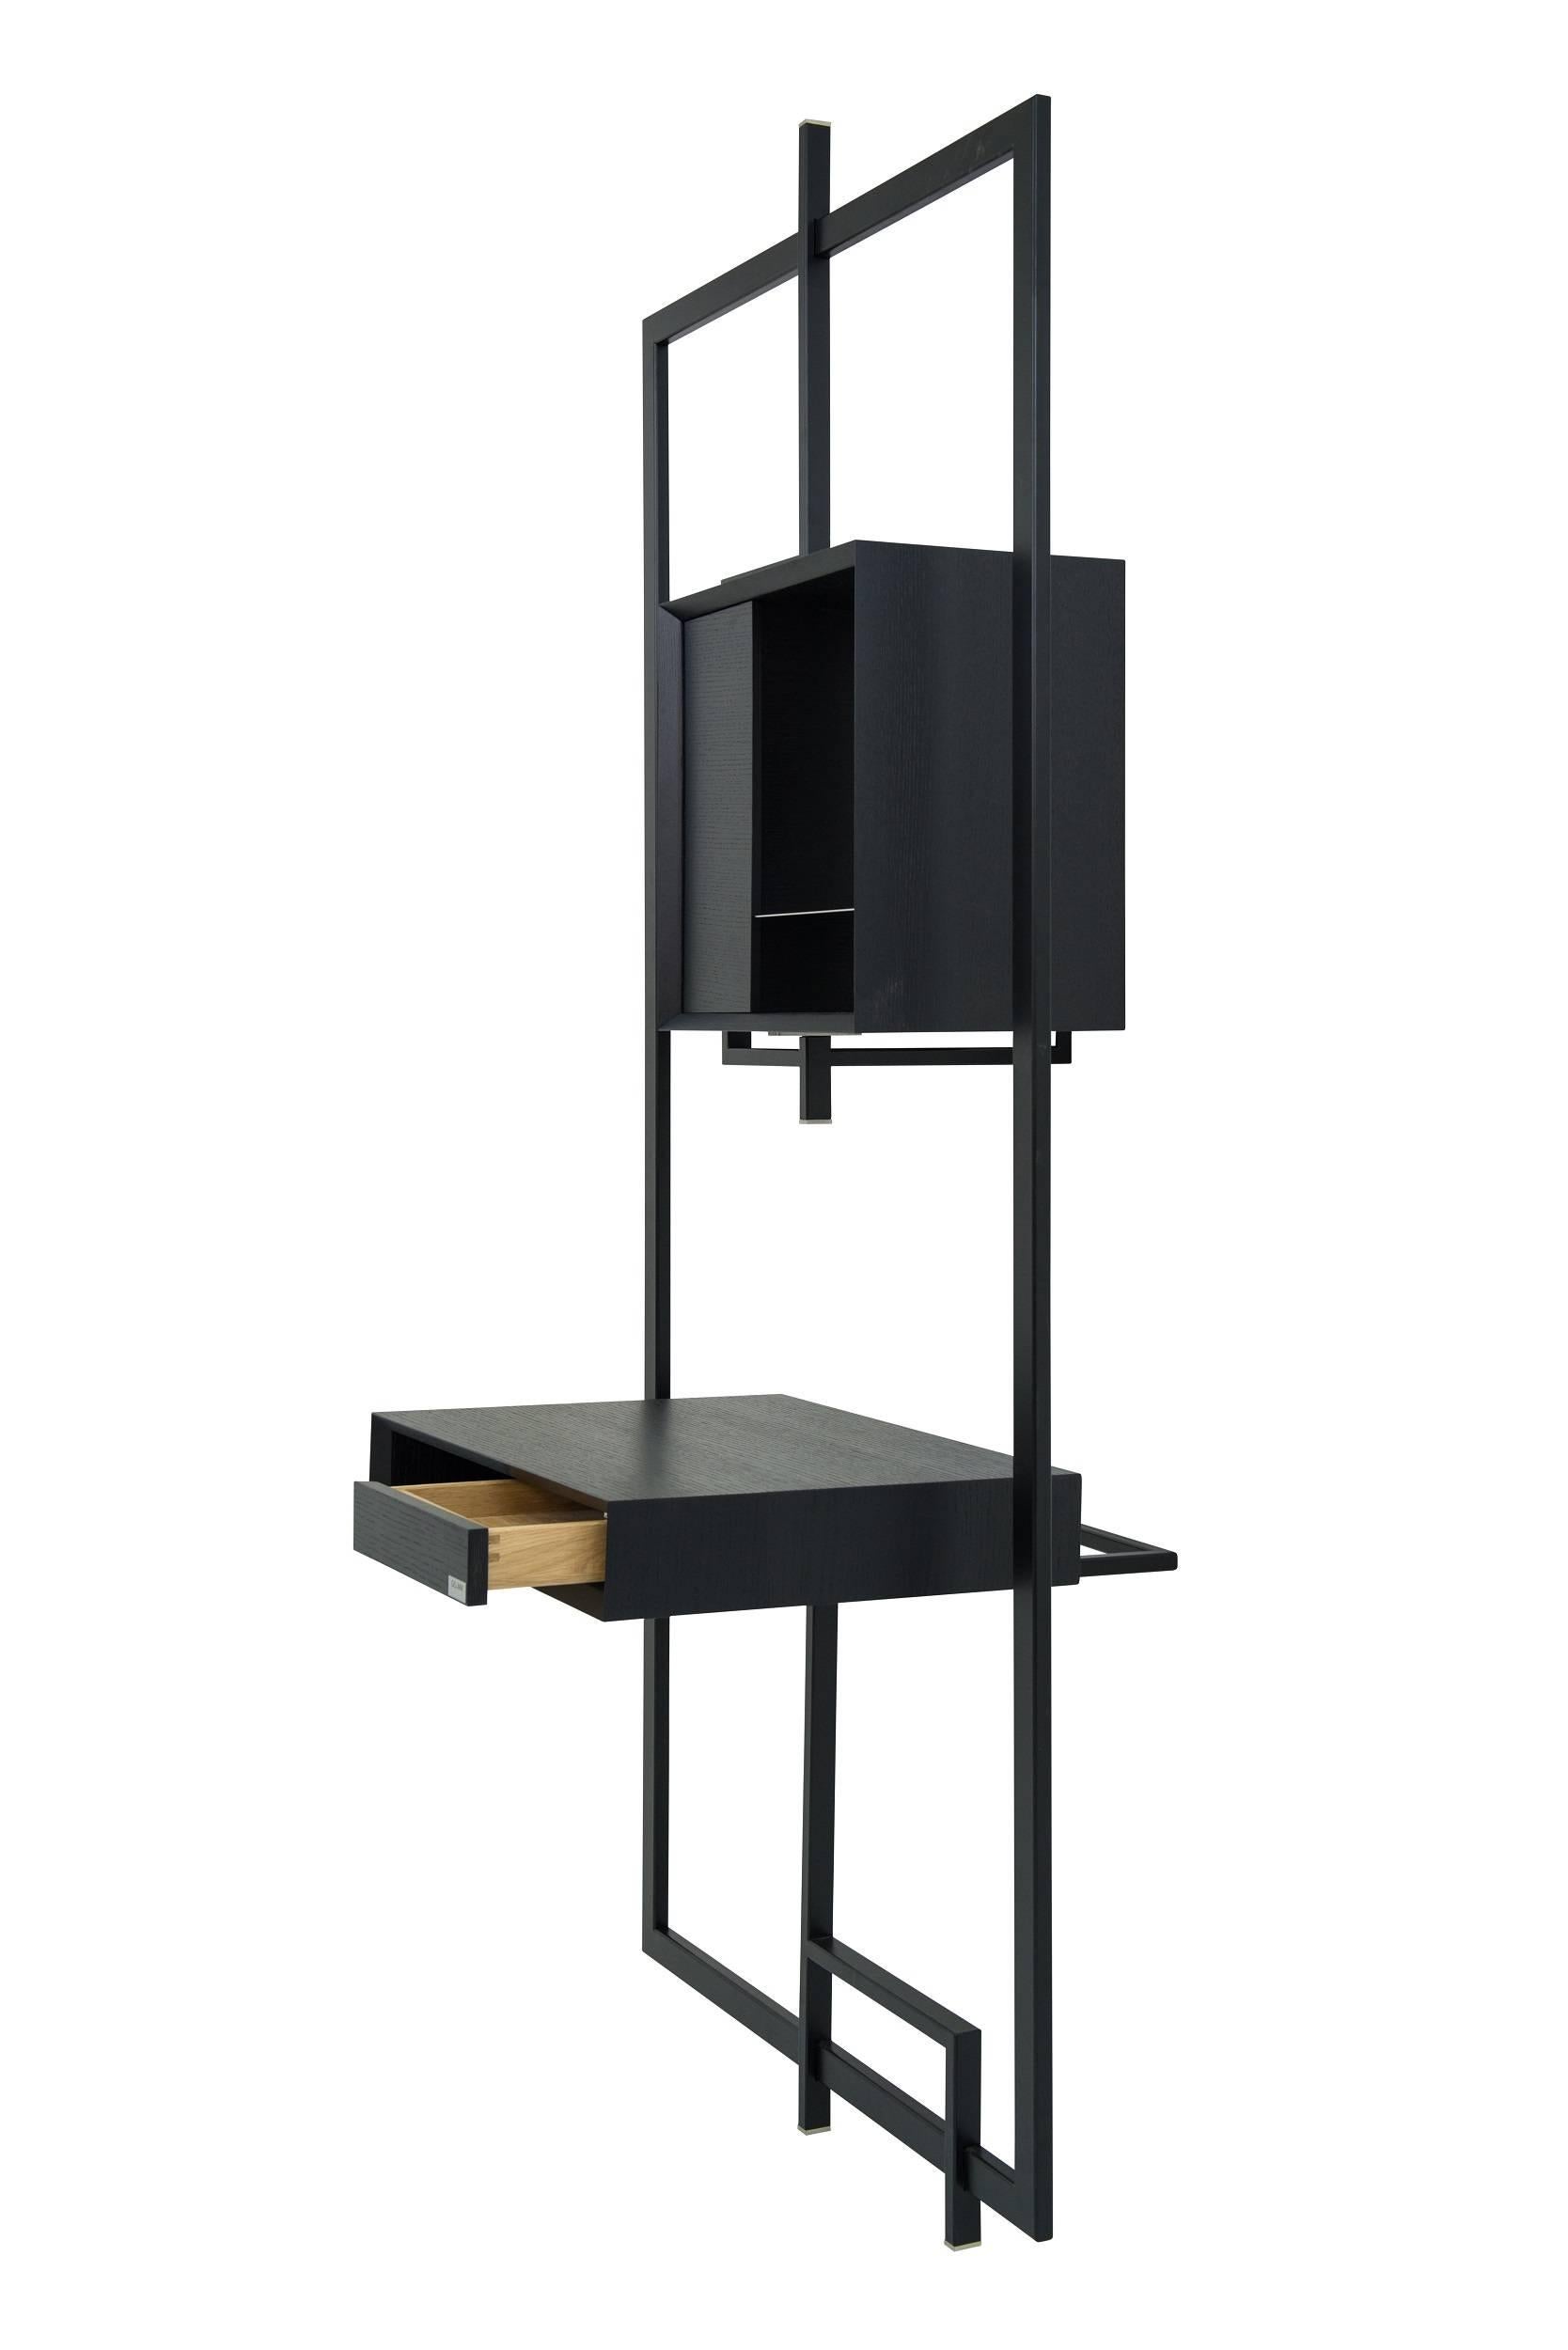 Modern Black Desk Secretary COM:POS:ITION 0.9  Handcrafted Contemporary Design  For Sale